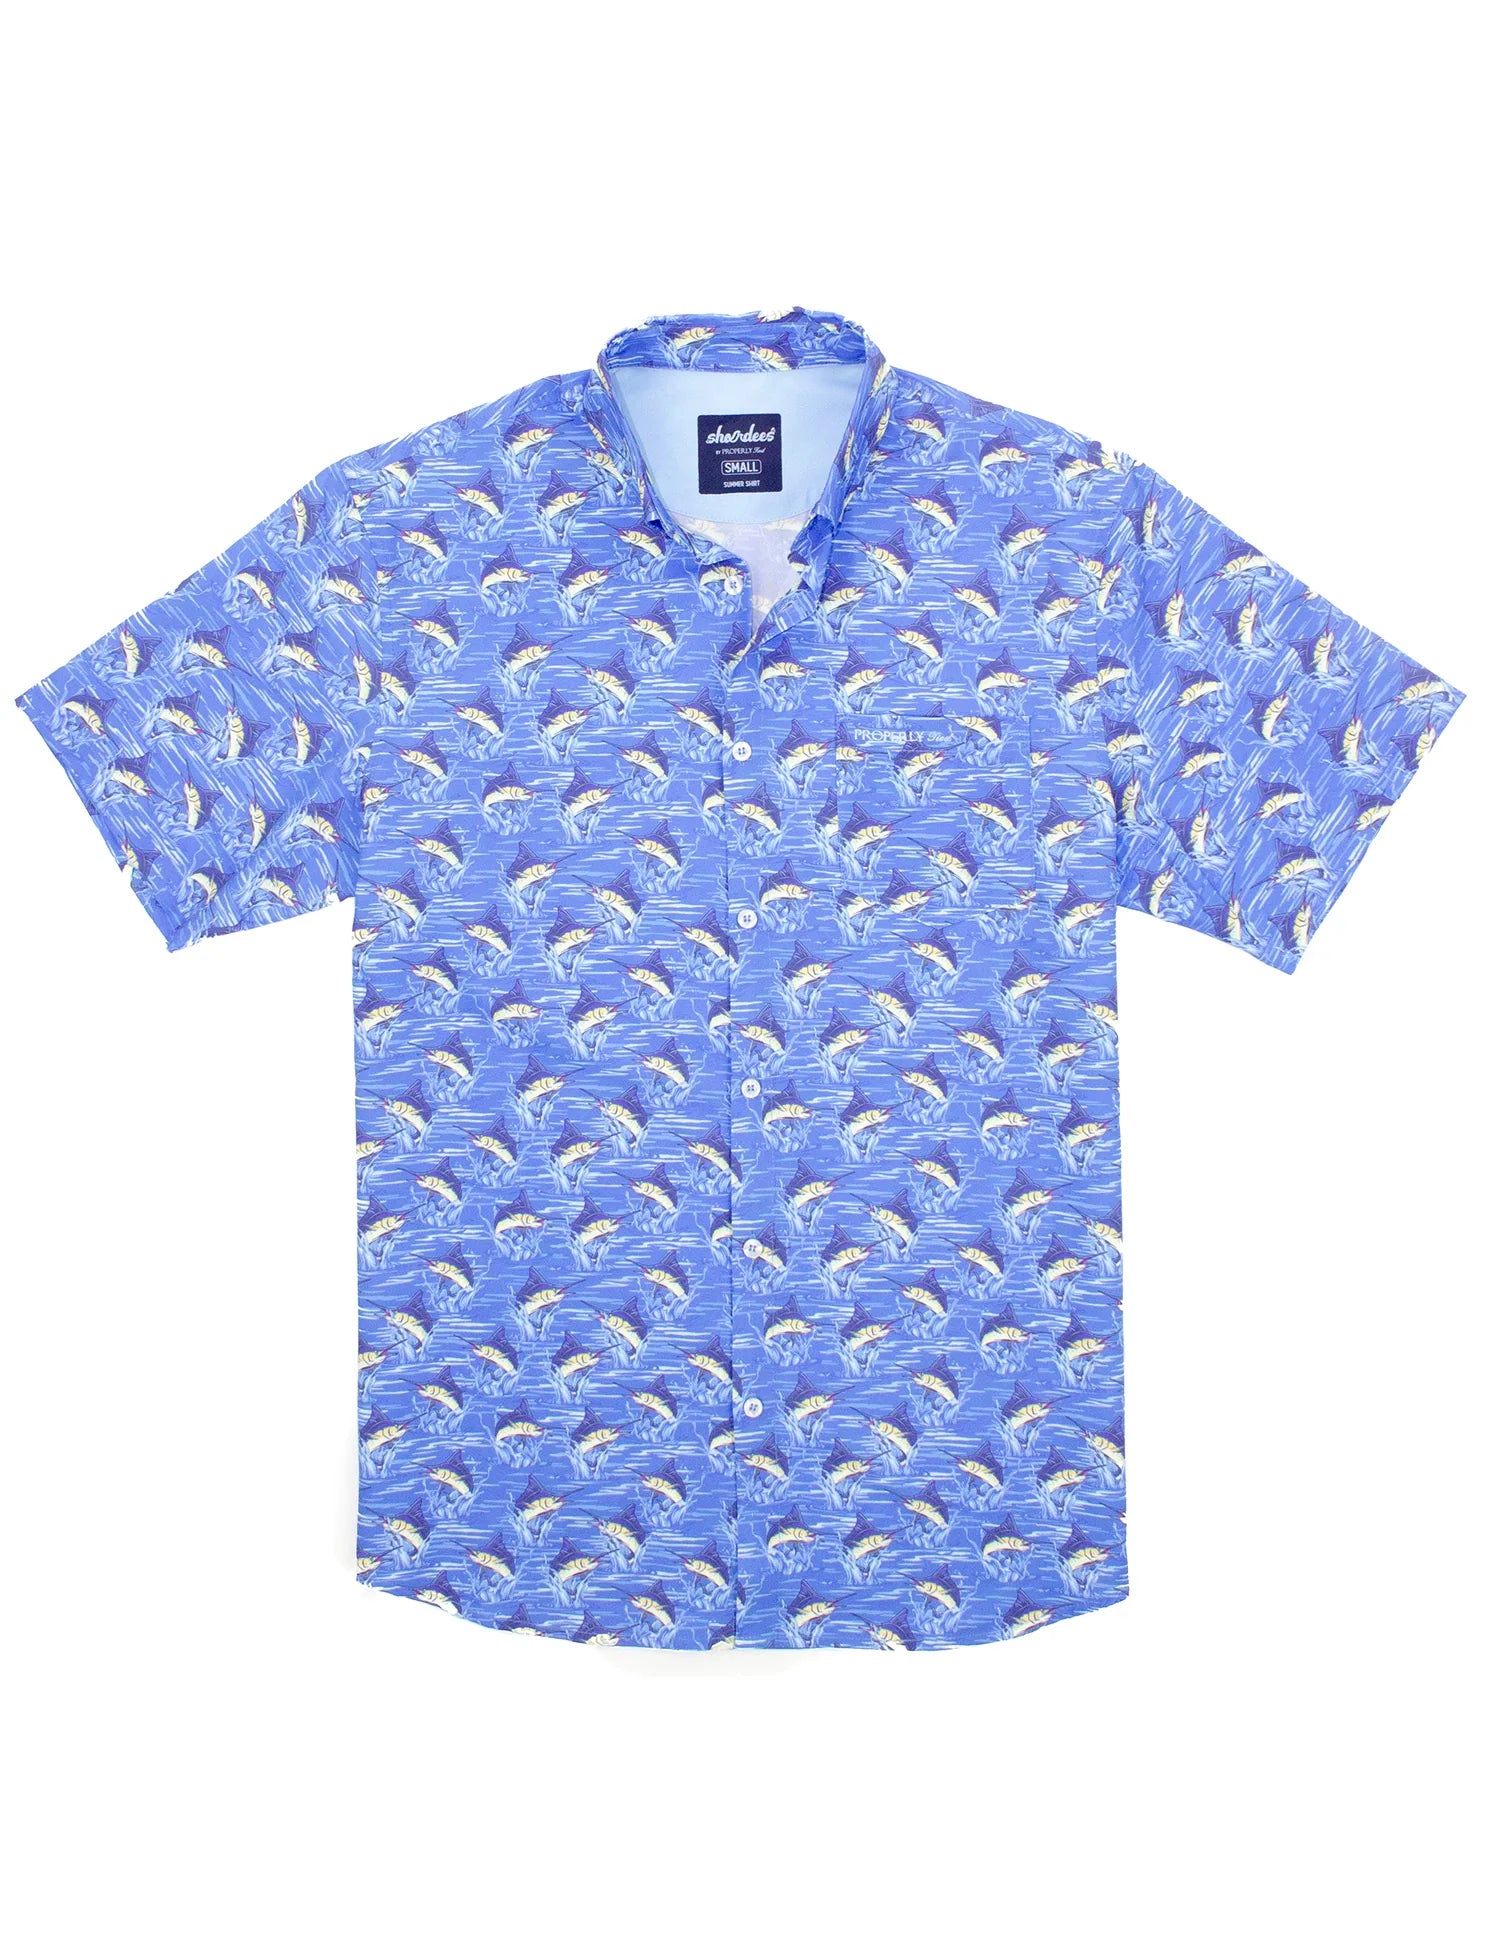 Shordees Marlin Shirt